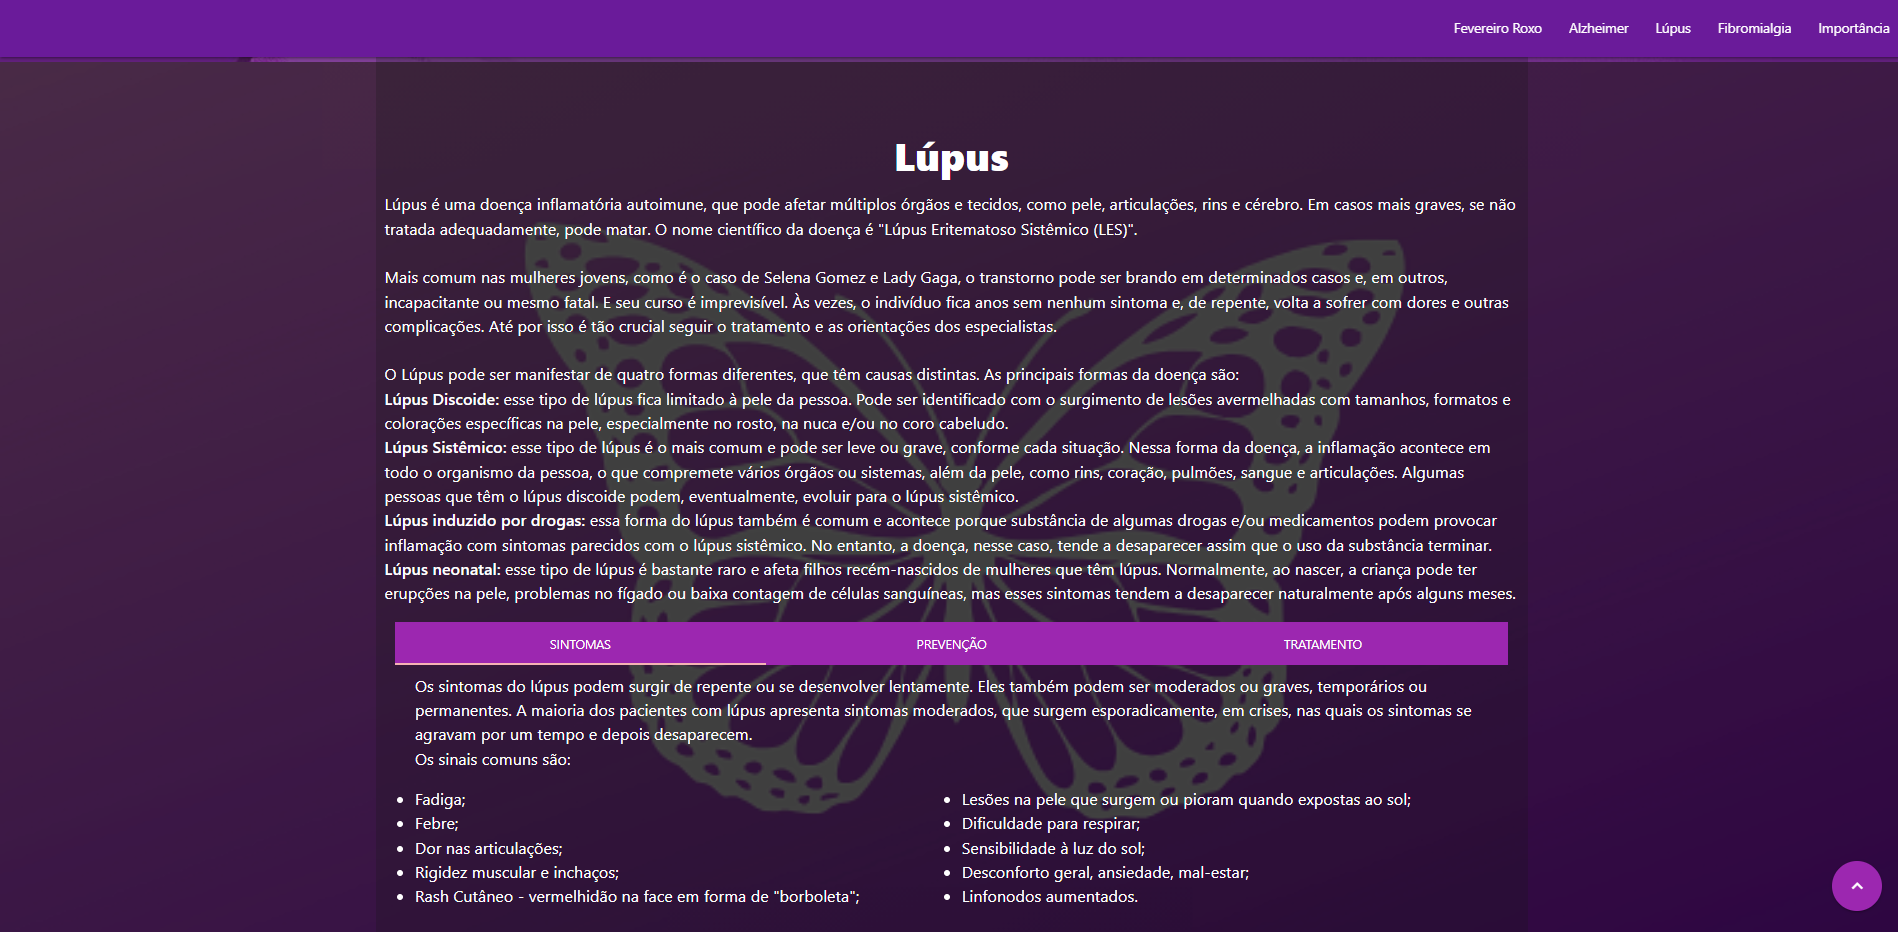  Continuação do site social, contendo informações sobre a doença de Lúpus